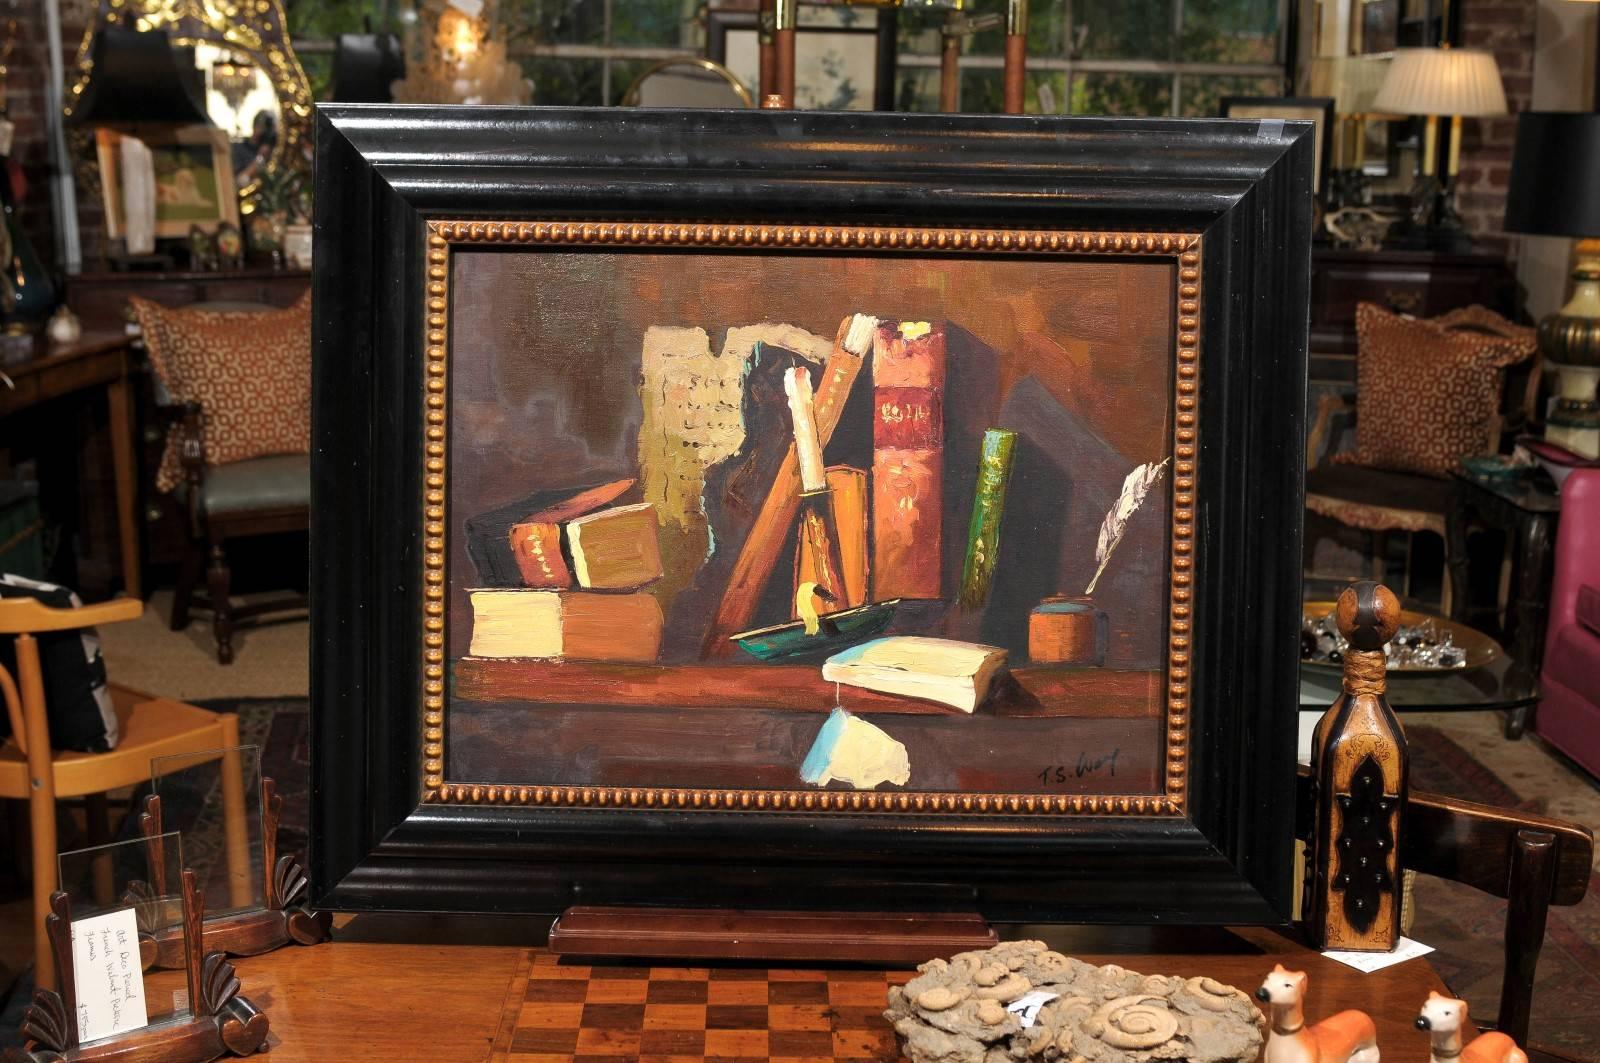 stillleben des 20. Jahrhunderts mit Lederbüchern, einem Kerzenständer aus Messing und einem Tintenfass mit Federkiel, gemalt in einem impressionistischen Stil. Öl auf Leinwand und signiert in der unteren rechten Ecke.